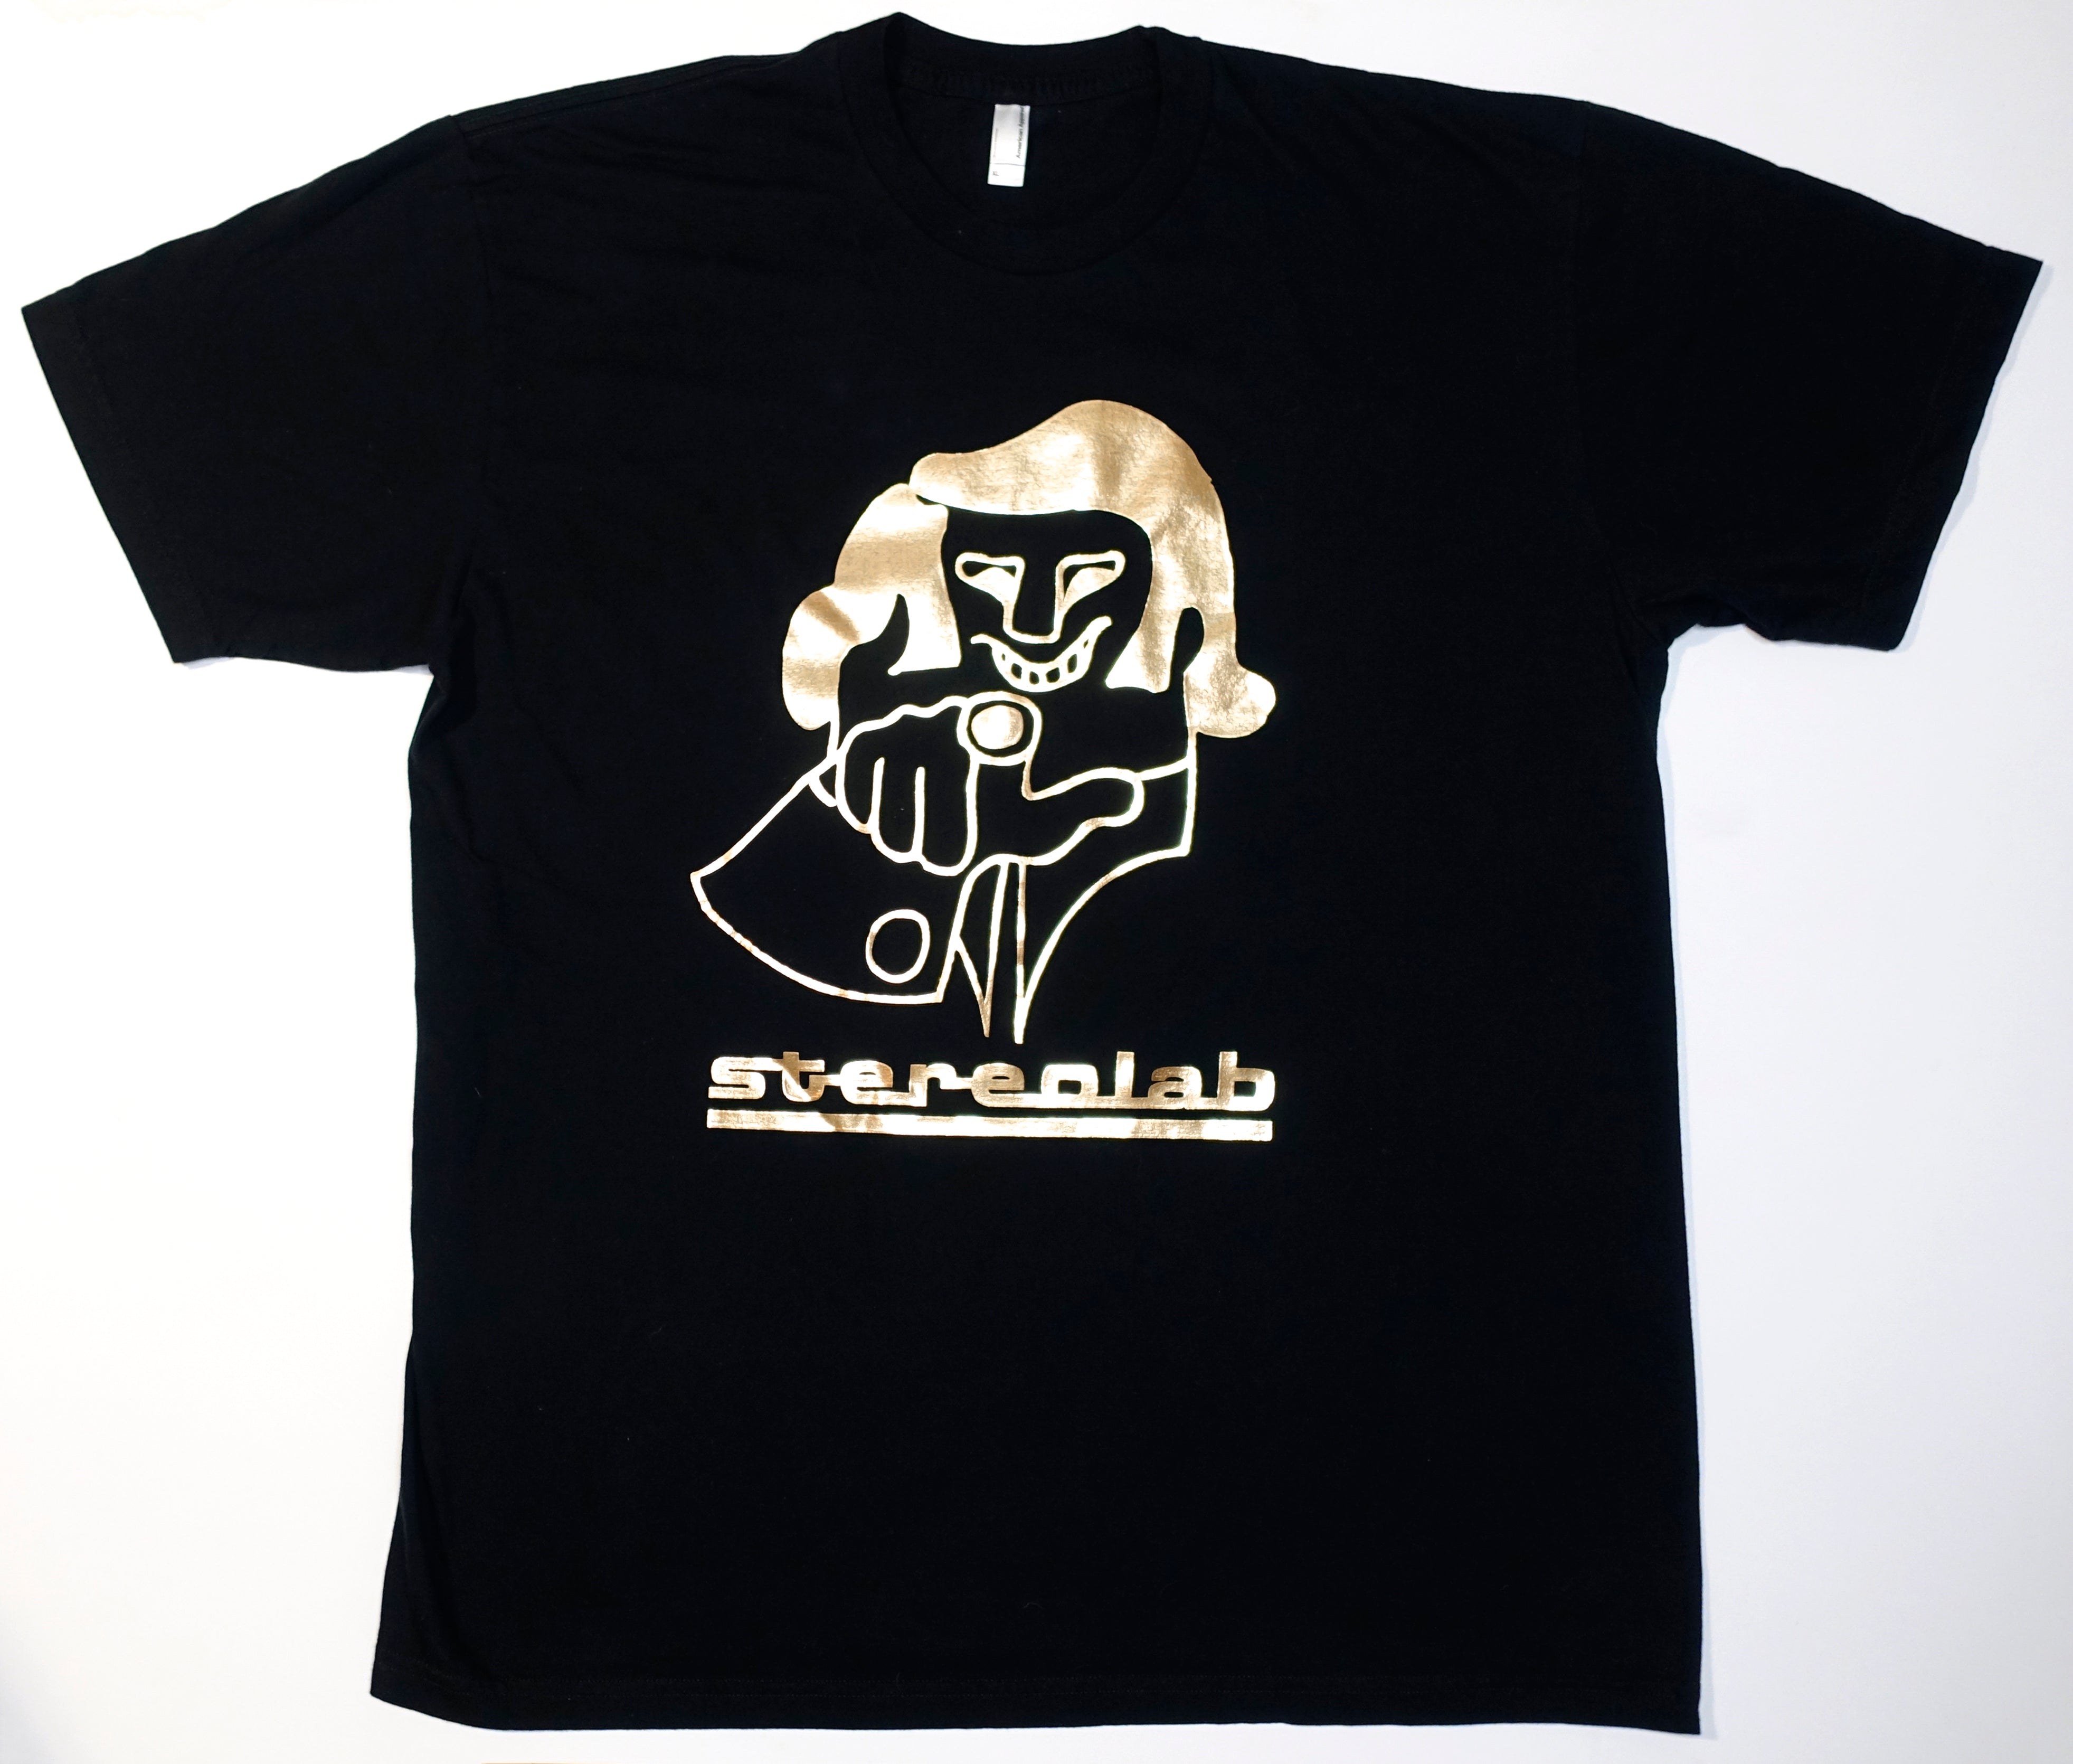 Stereolab – Cliff 00's Tour Shirt Size XL (Black/Gold Foil)